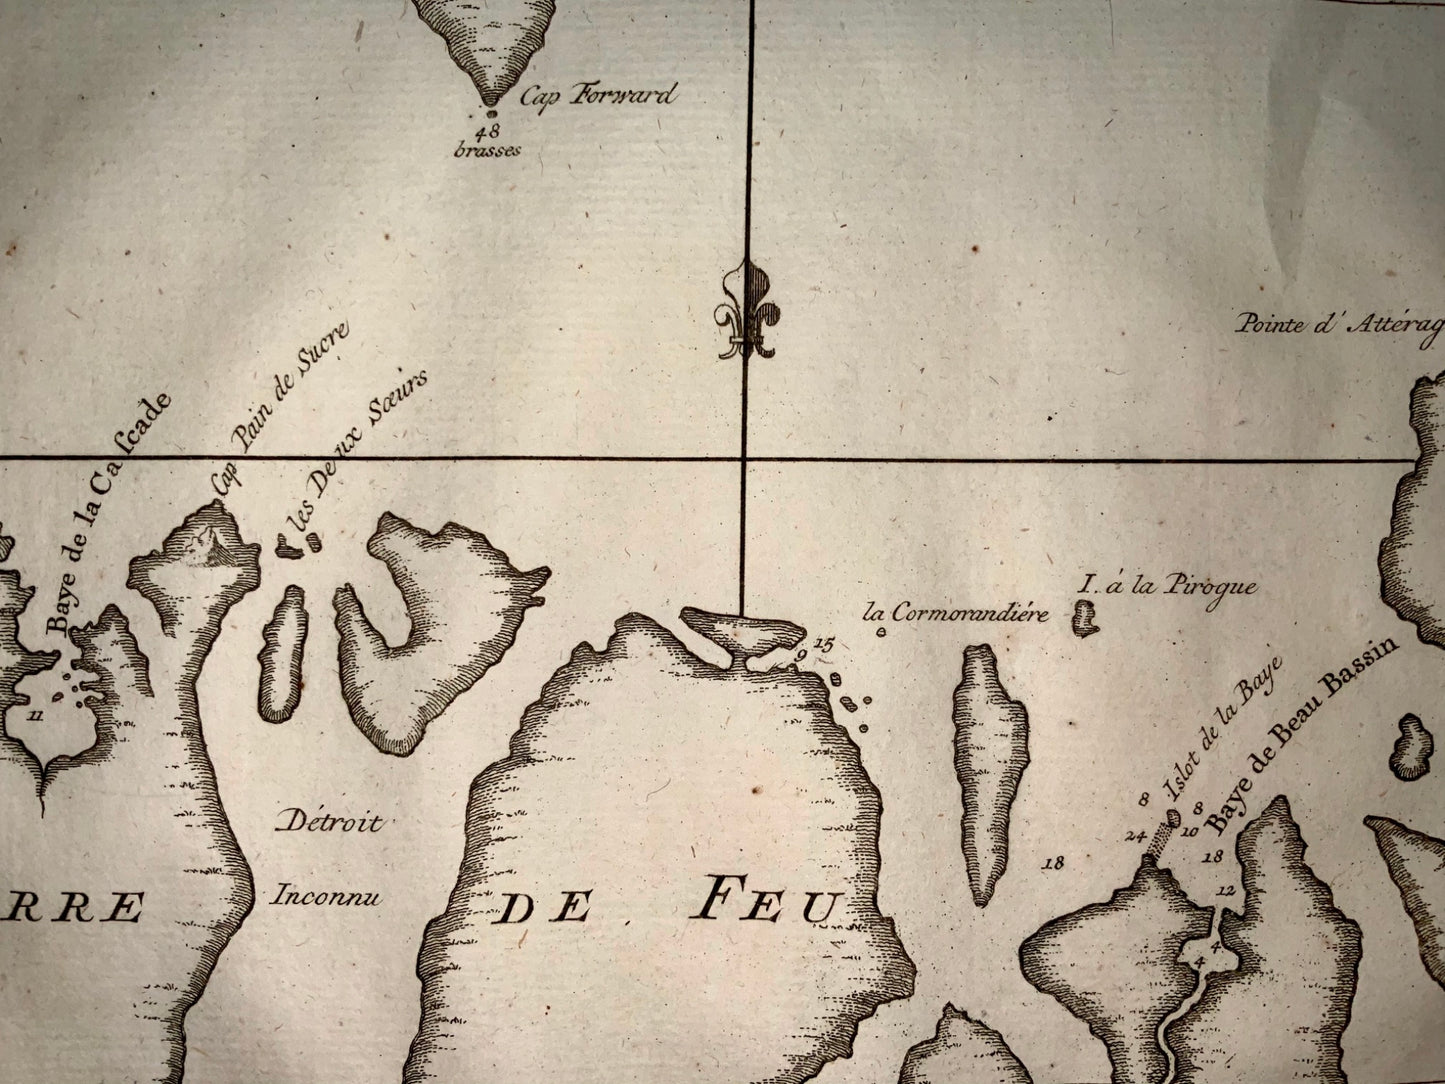 1757 Jacques BELLIN - Detroit de MAGELLAN STRAITS - Chile - Map - Travel